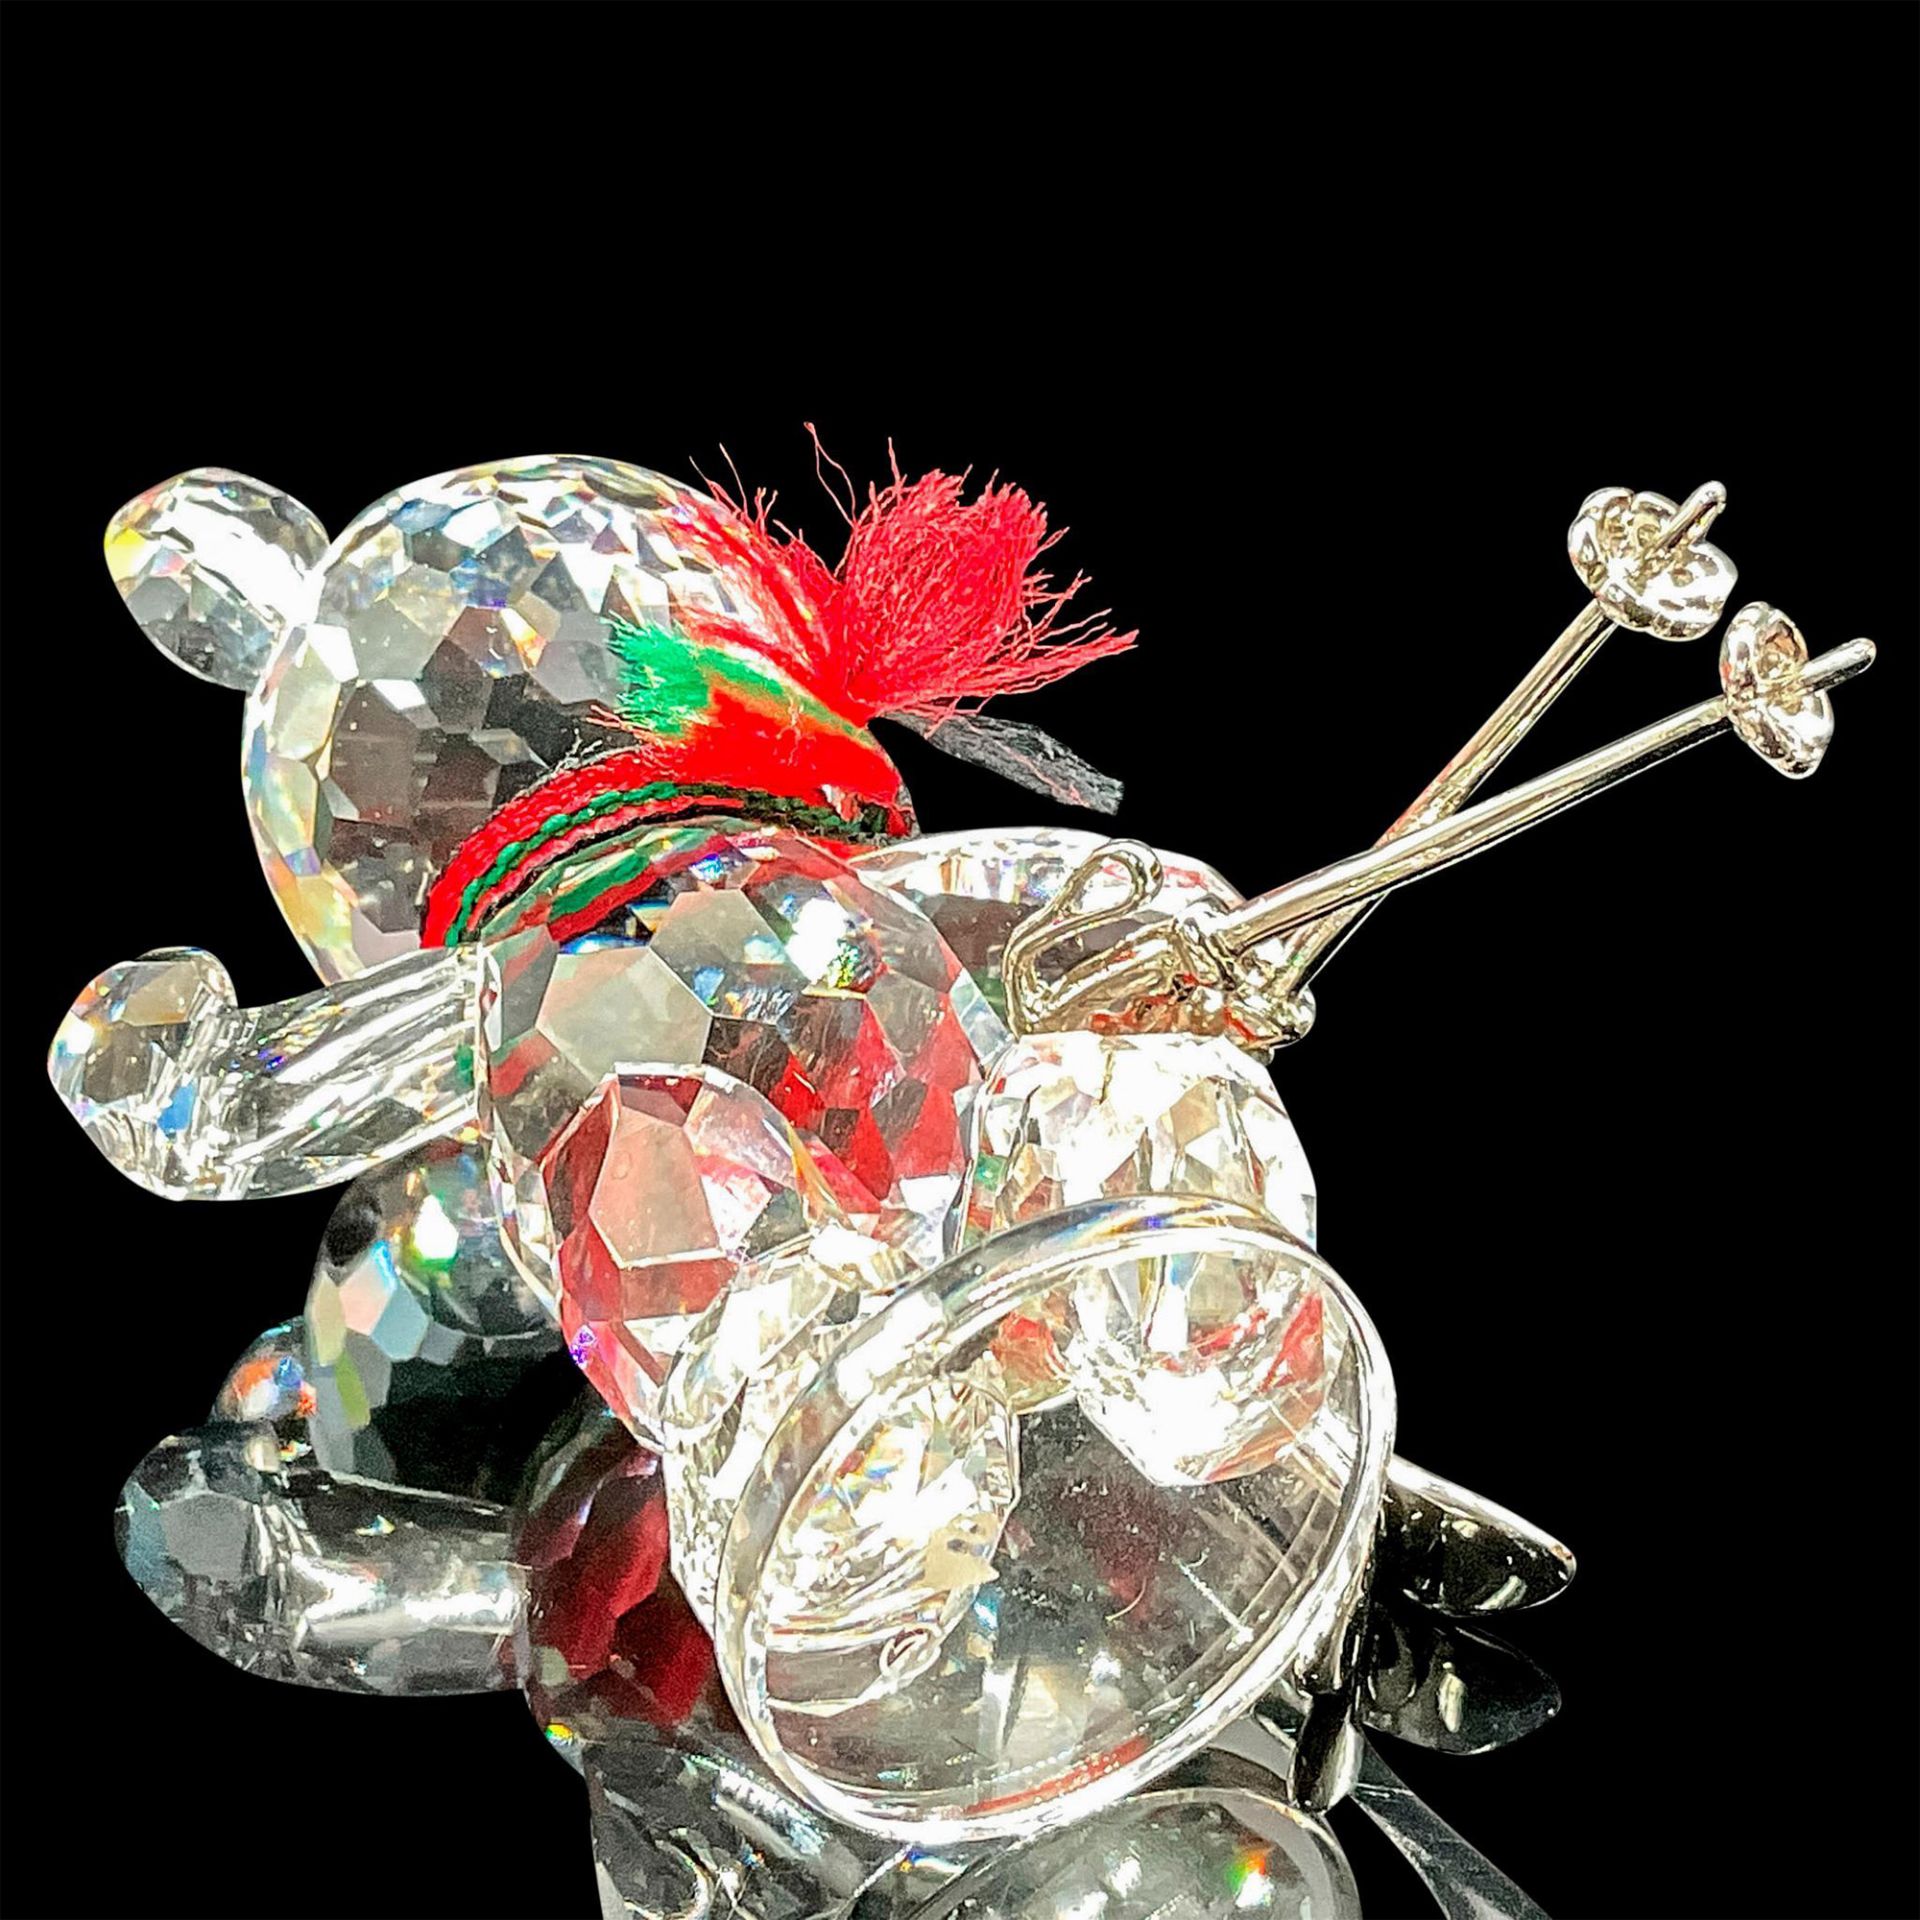 Swarovski Crystal Figurine, Kris Bear with Skis - Image 3 of 3